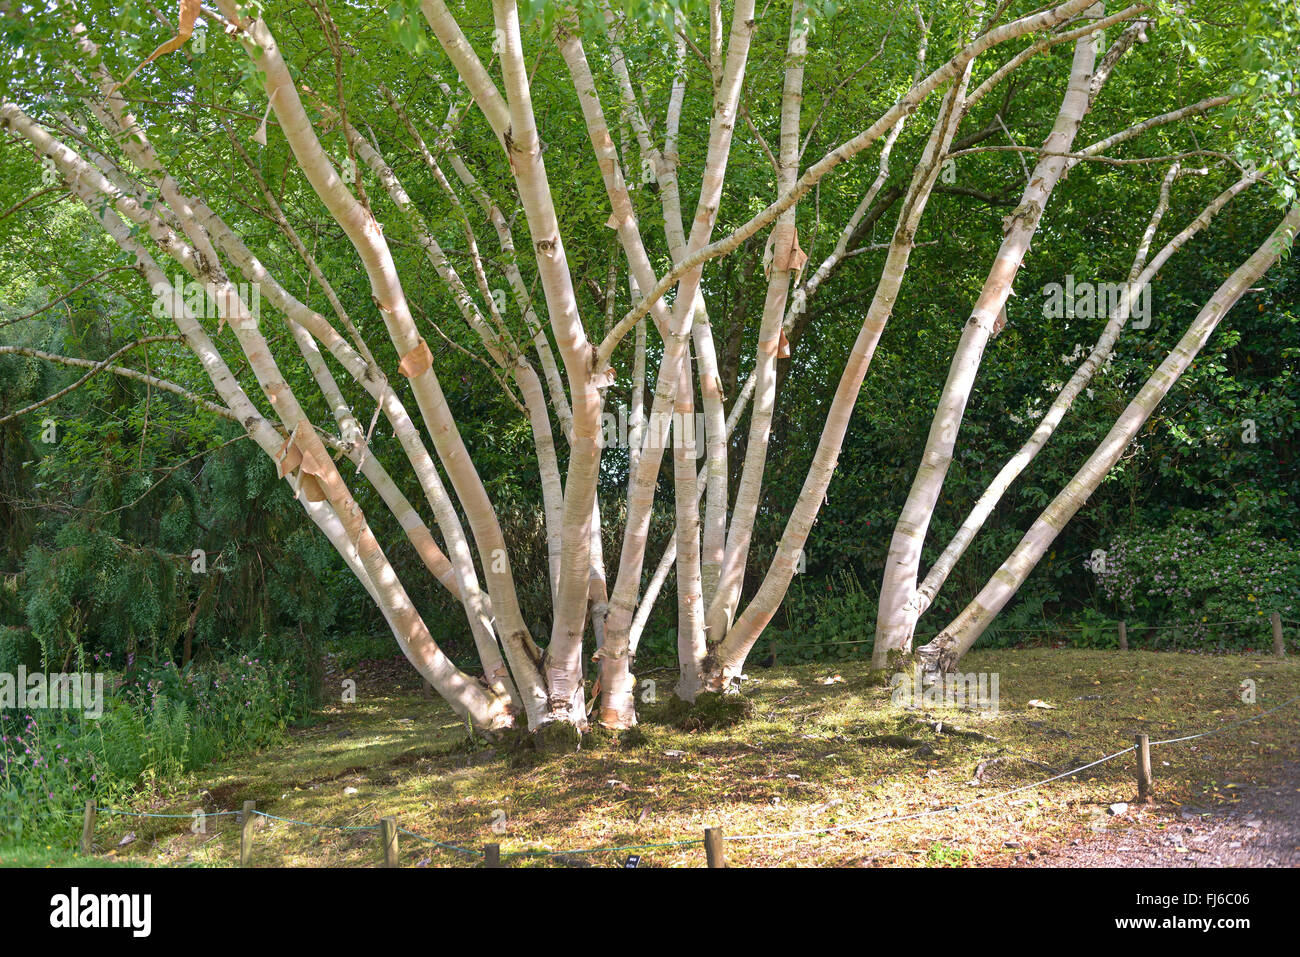 Erman's Birch, Rock russe Bouleau (Betula ermanii 'Grayswood Hill', Betula ermanii Grayswood Hill), troncs de cultivar Grayswood Hill, Royaume-Uni Banque D'Images